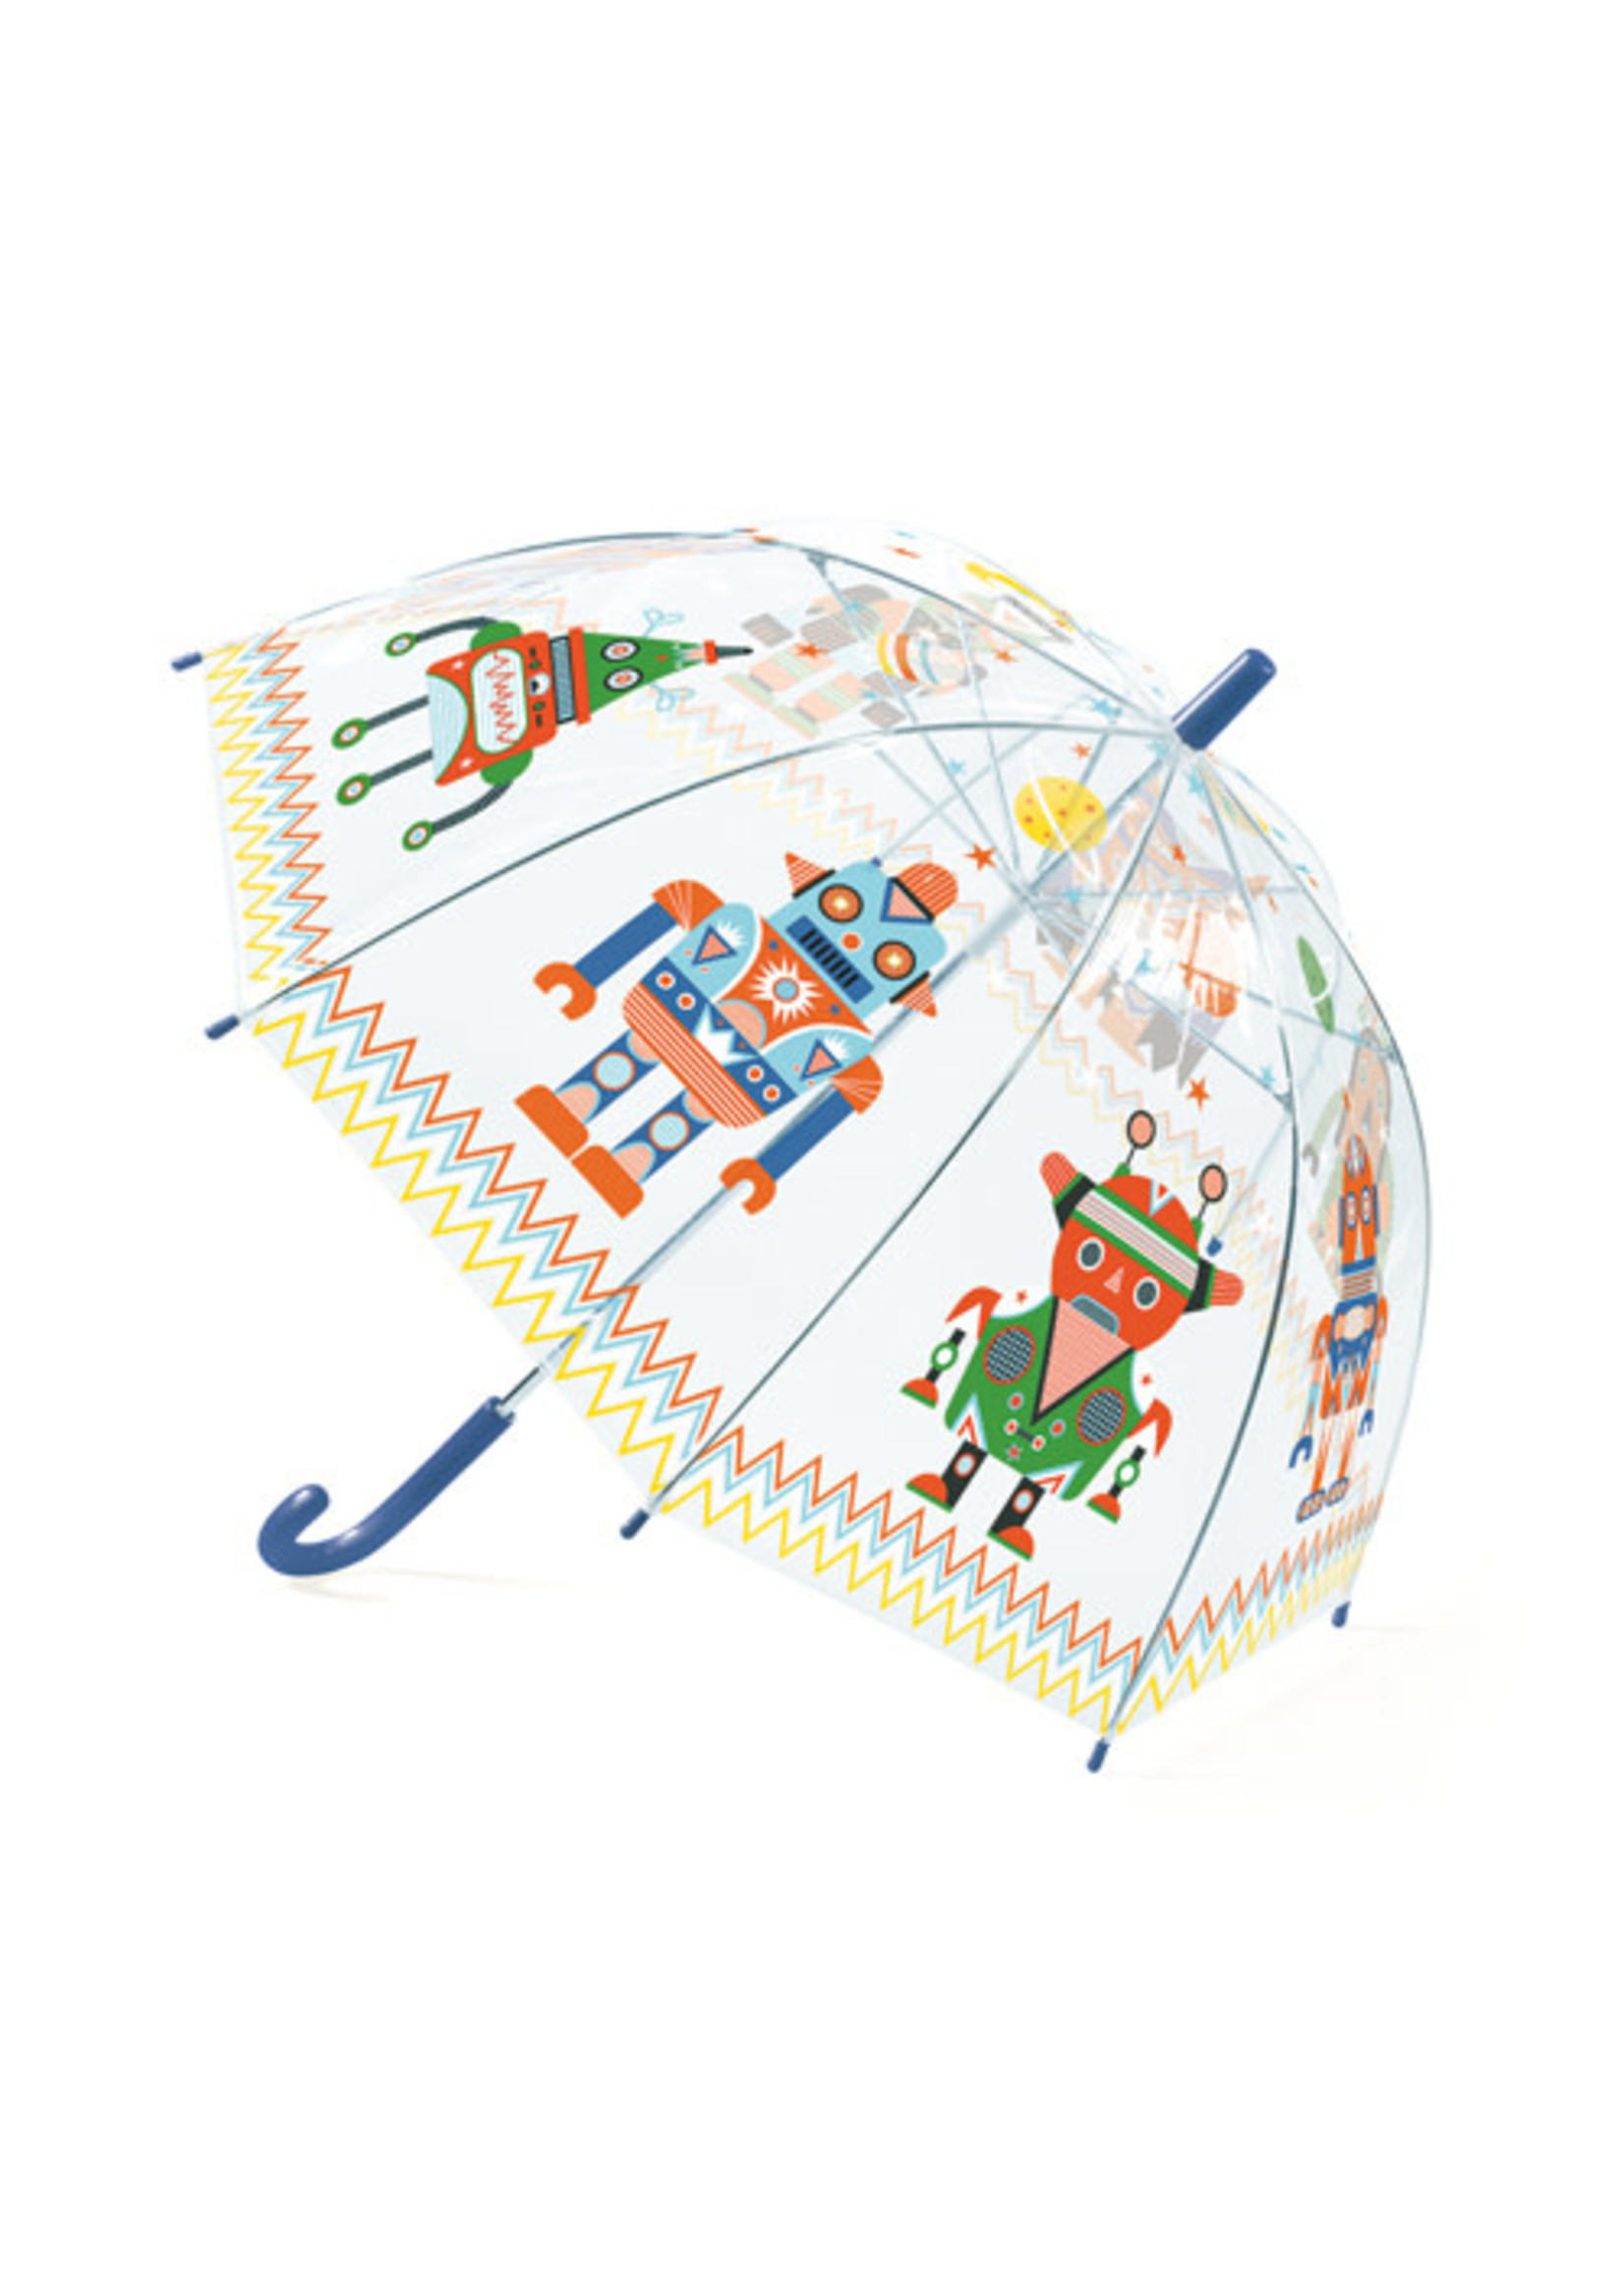 Djeco Umbrella - Djeco - 12 models